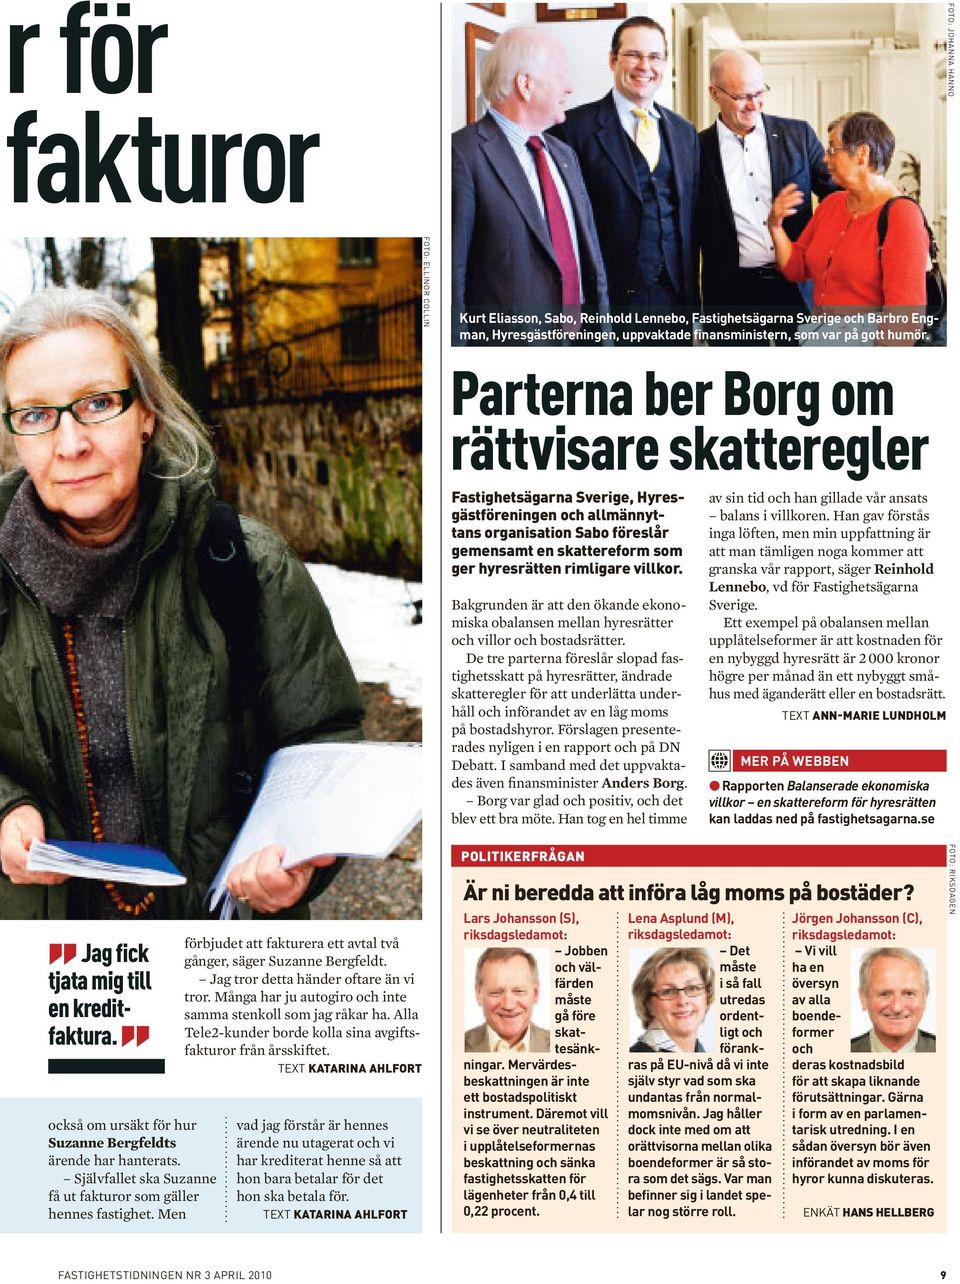 Parterna ber Borg om rättvisare skatteregler Fastighetsägarna Sverige, Hyresgästföreningen och allmännyttans organisation Sabo föreslår gemensamt en skattereform som ger hyresrätten rimligare villkor.